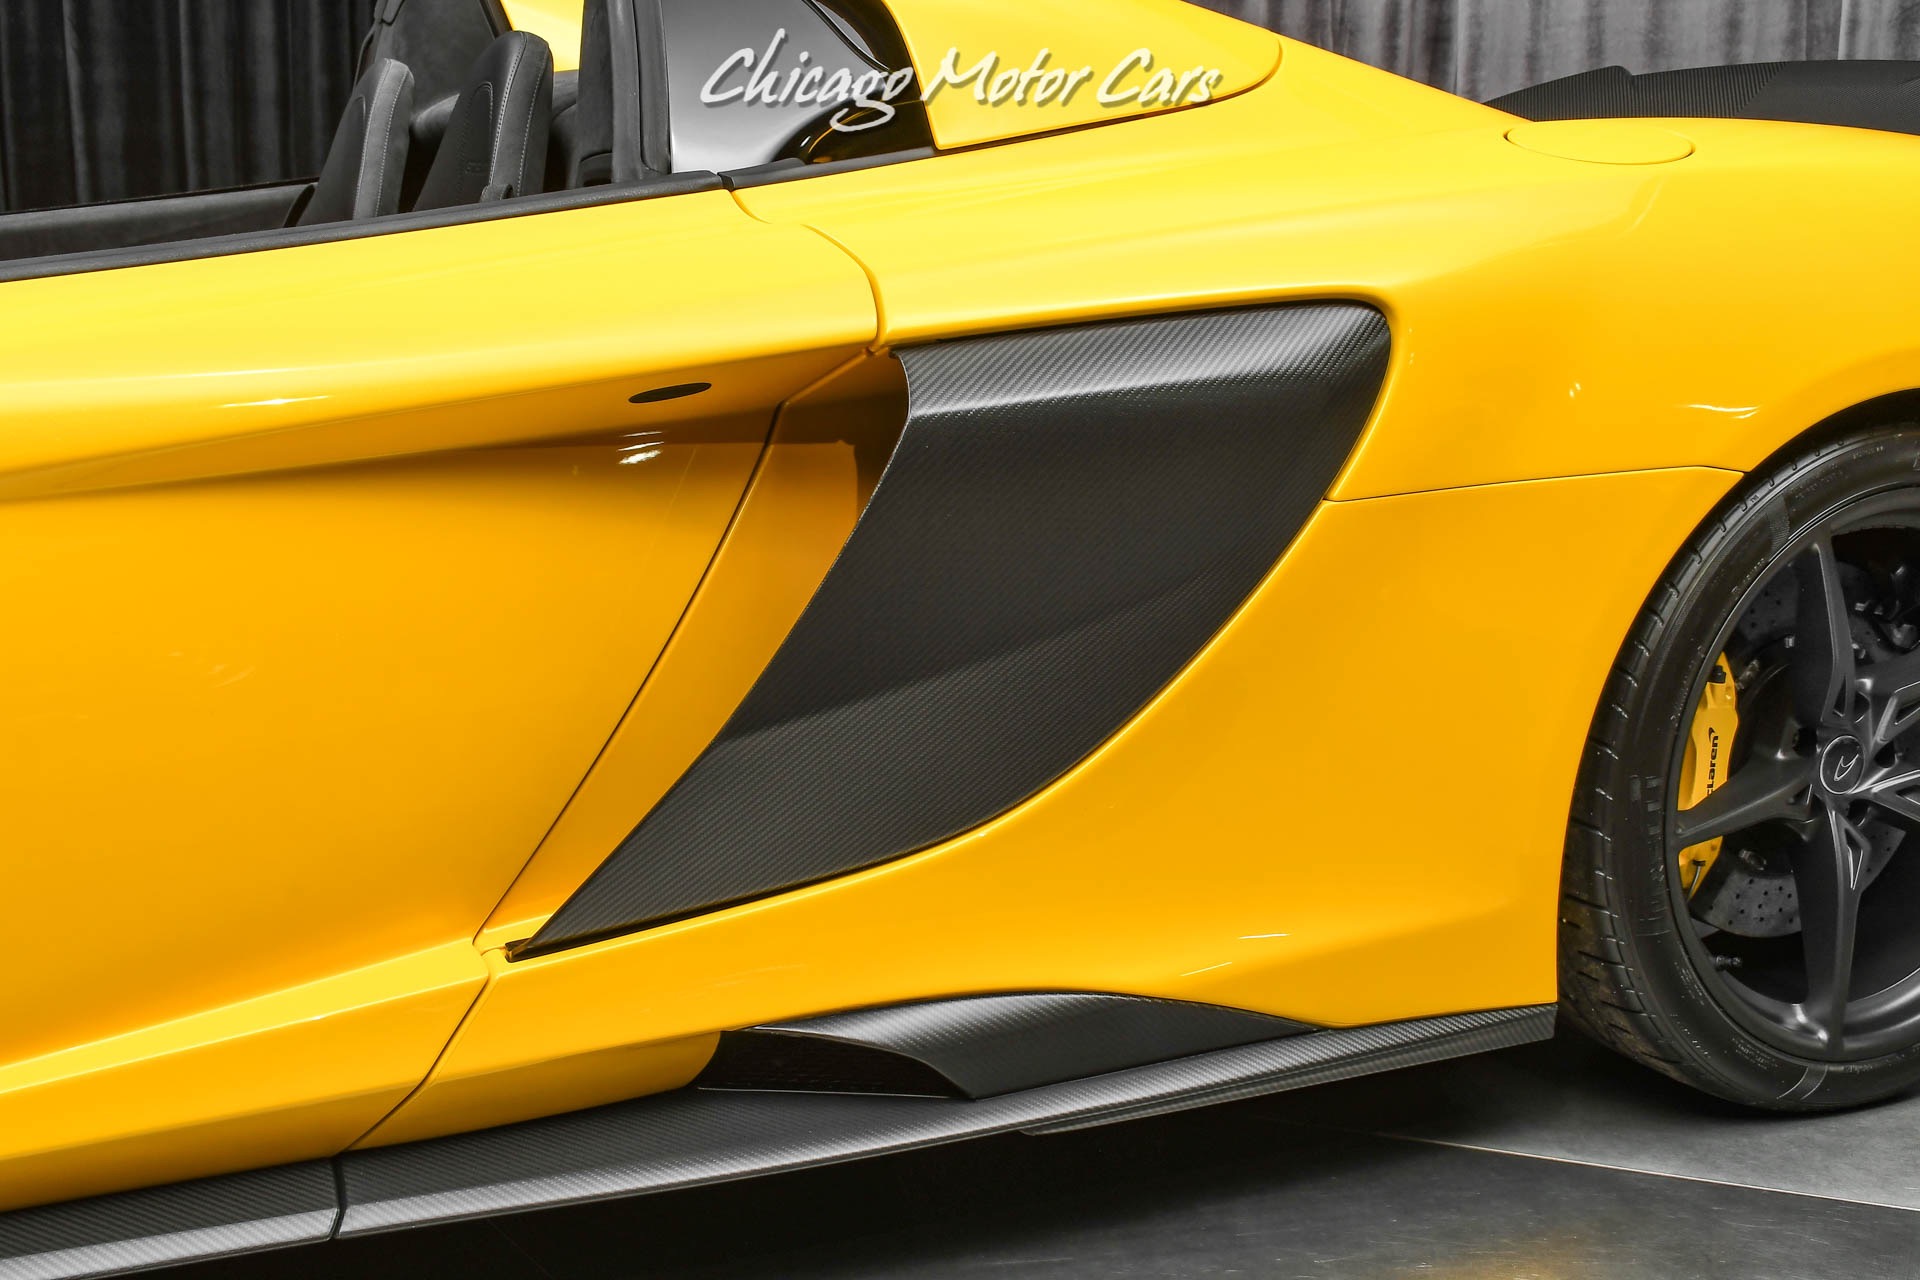 Used-2016-McLaren-675LT-Spider-Convertible-HUGE-MSRP-SUPER-RARE-MSO-Options-LOADED